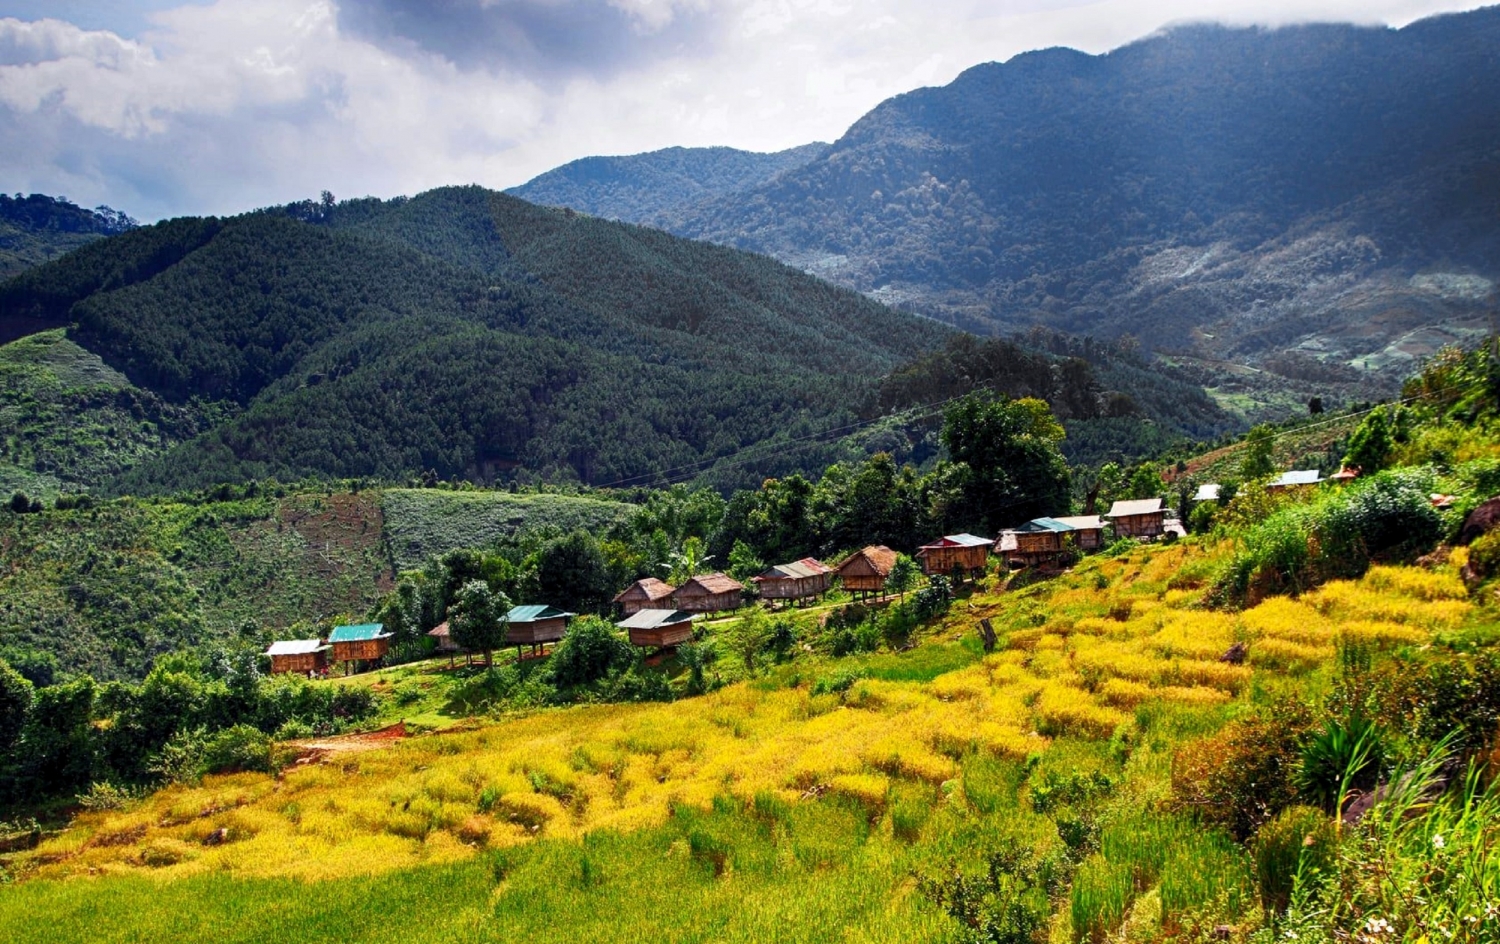 Golden season terraced fields in Mang Ri valley